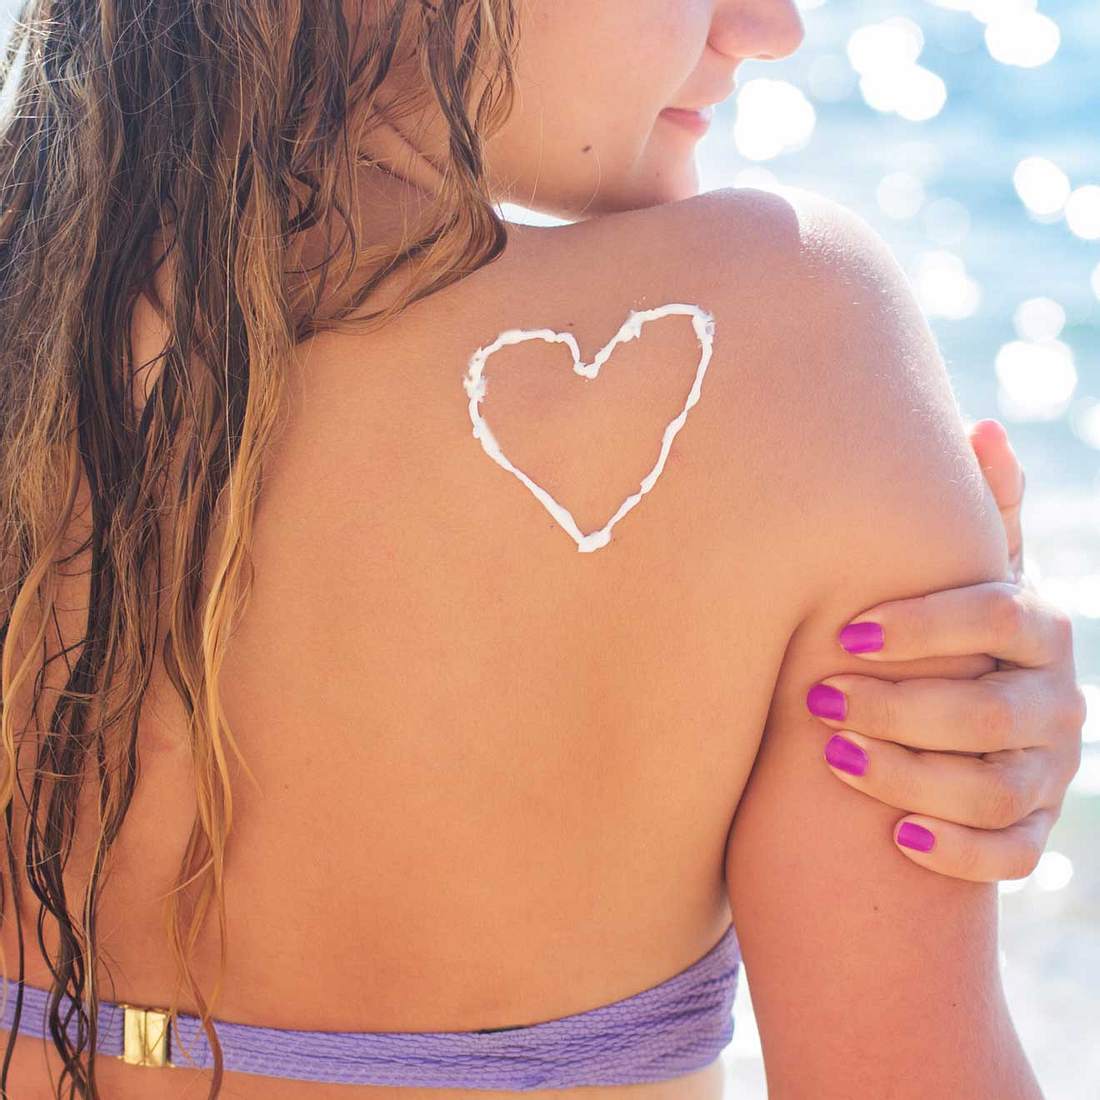 Sonnenbrand führt zu vorzeitiger Hautalterung!